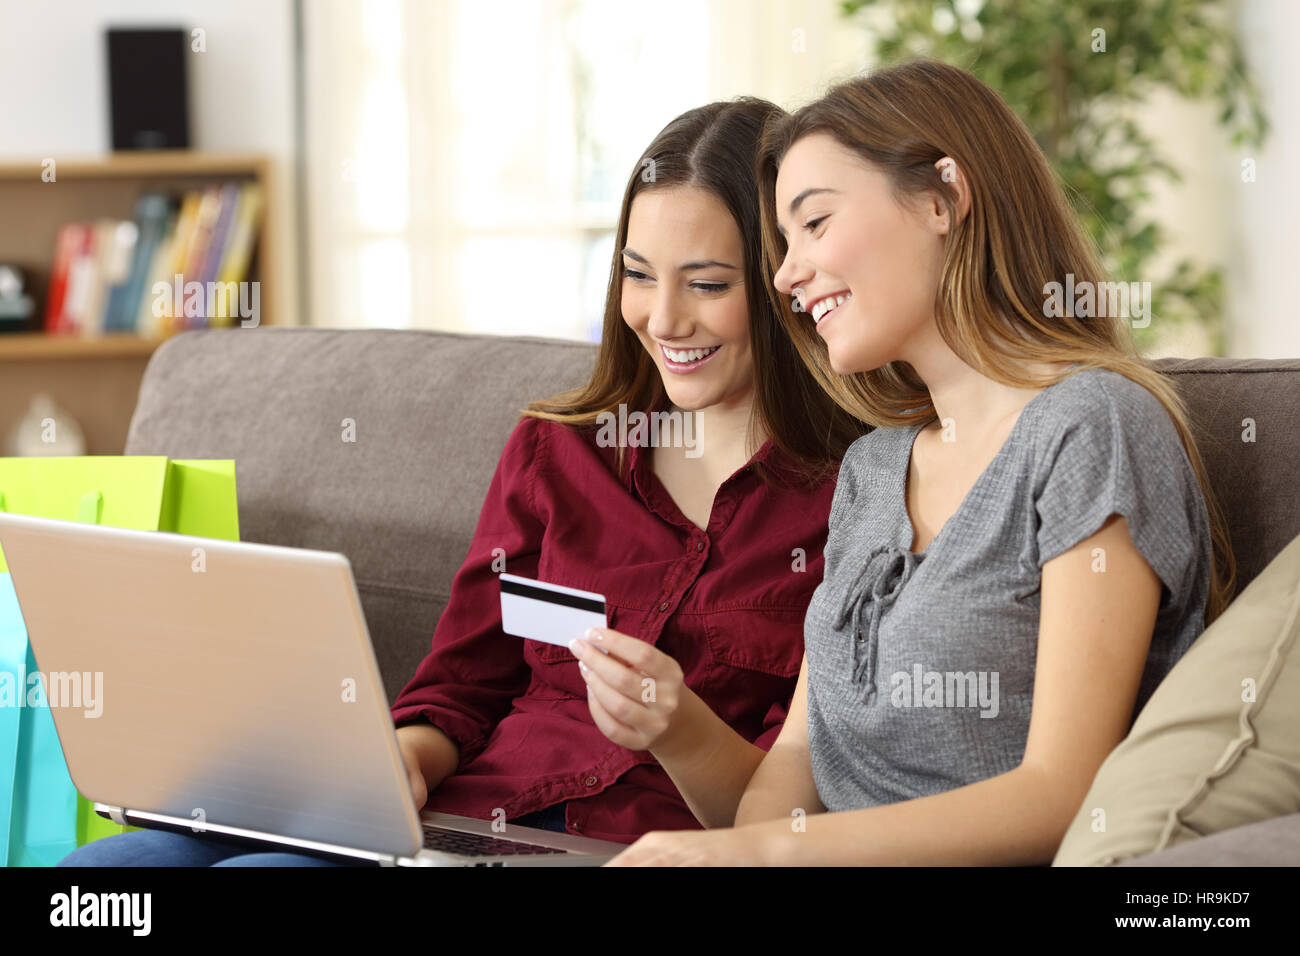 Zwei glückliche Mitbewohner zusammen kaufen online mit Kreditkarte und ein Laptop sitzen auf einem Sofa zu Hause mit einem heimeligen Hintergrund Stockfoto